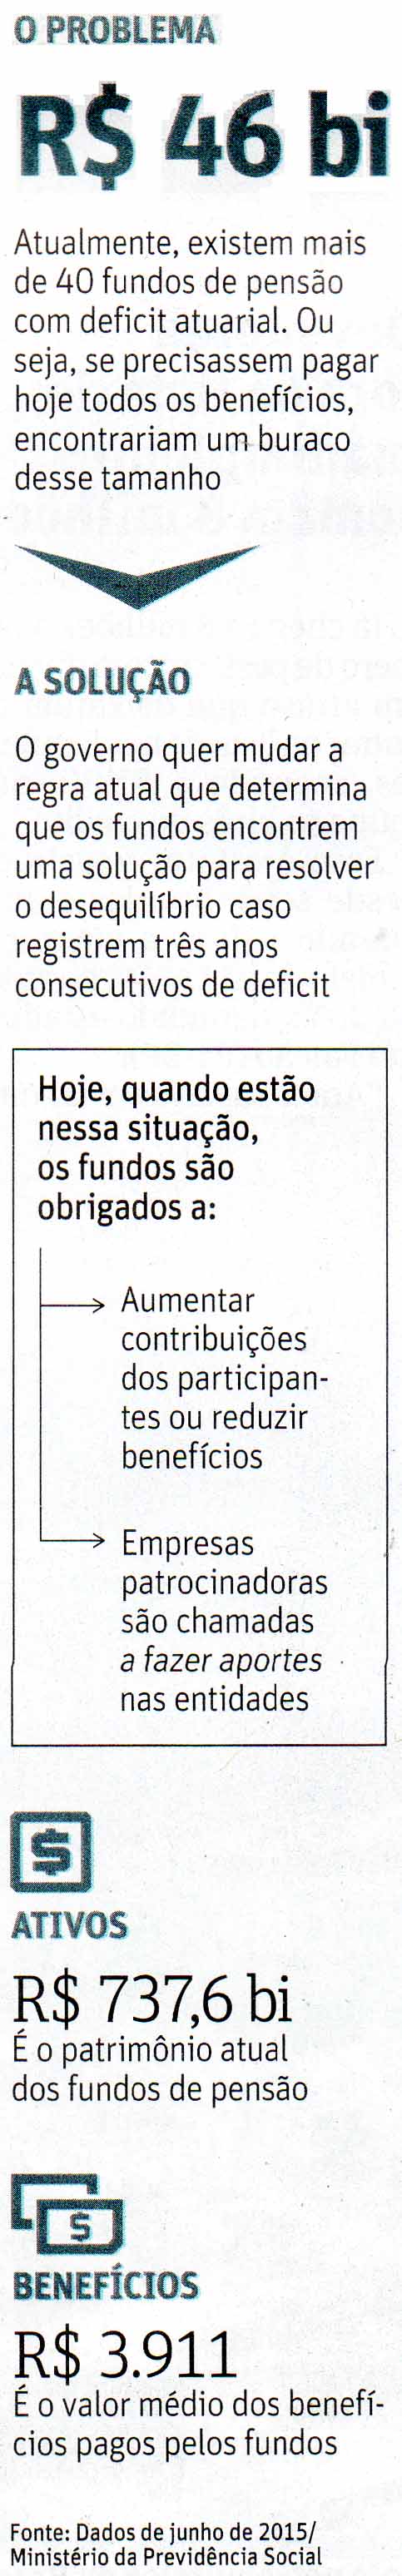 Folha de So Paulo - 16/11/15 - Fundos de Penso: O Problema